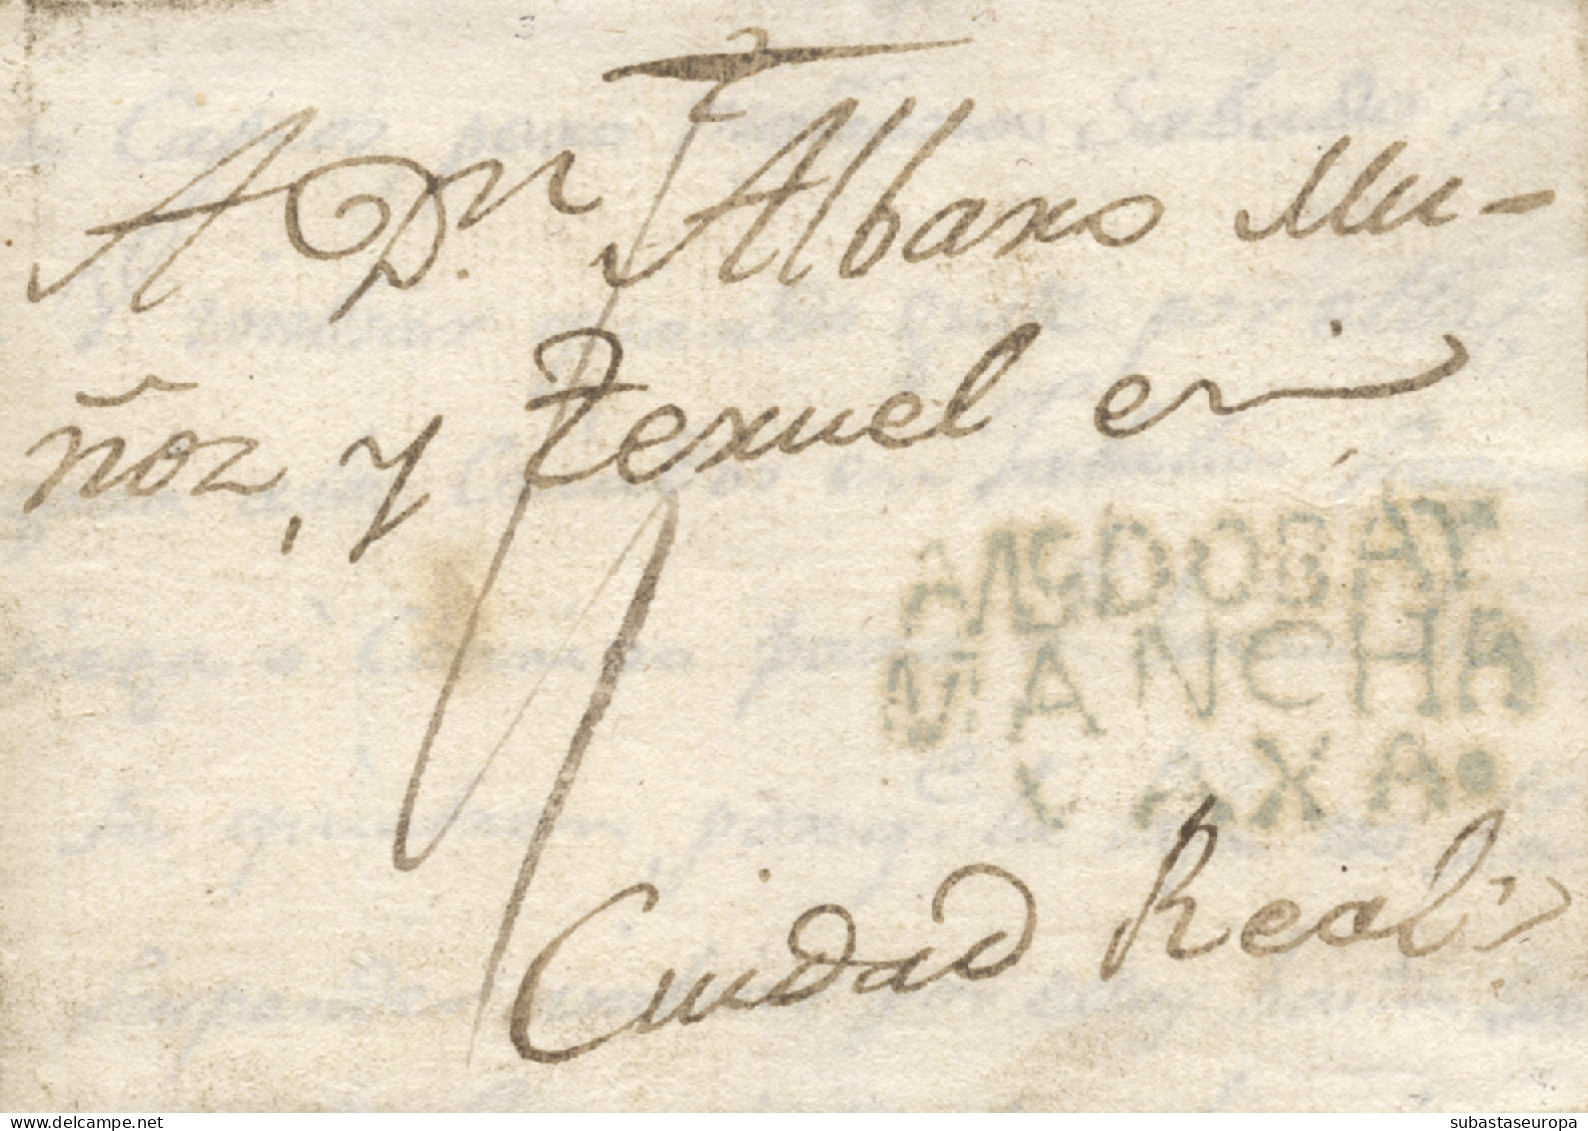 D.P. 23. 1803 (9 SEP). Carta De Puertollano A Ciudad Real. Marca De Almodóvar Nº 6A. Rara. - ...-1850 Préphilatélie